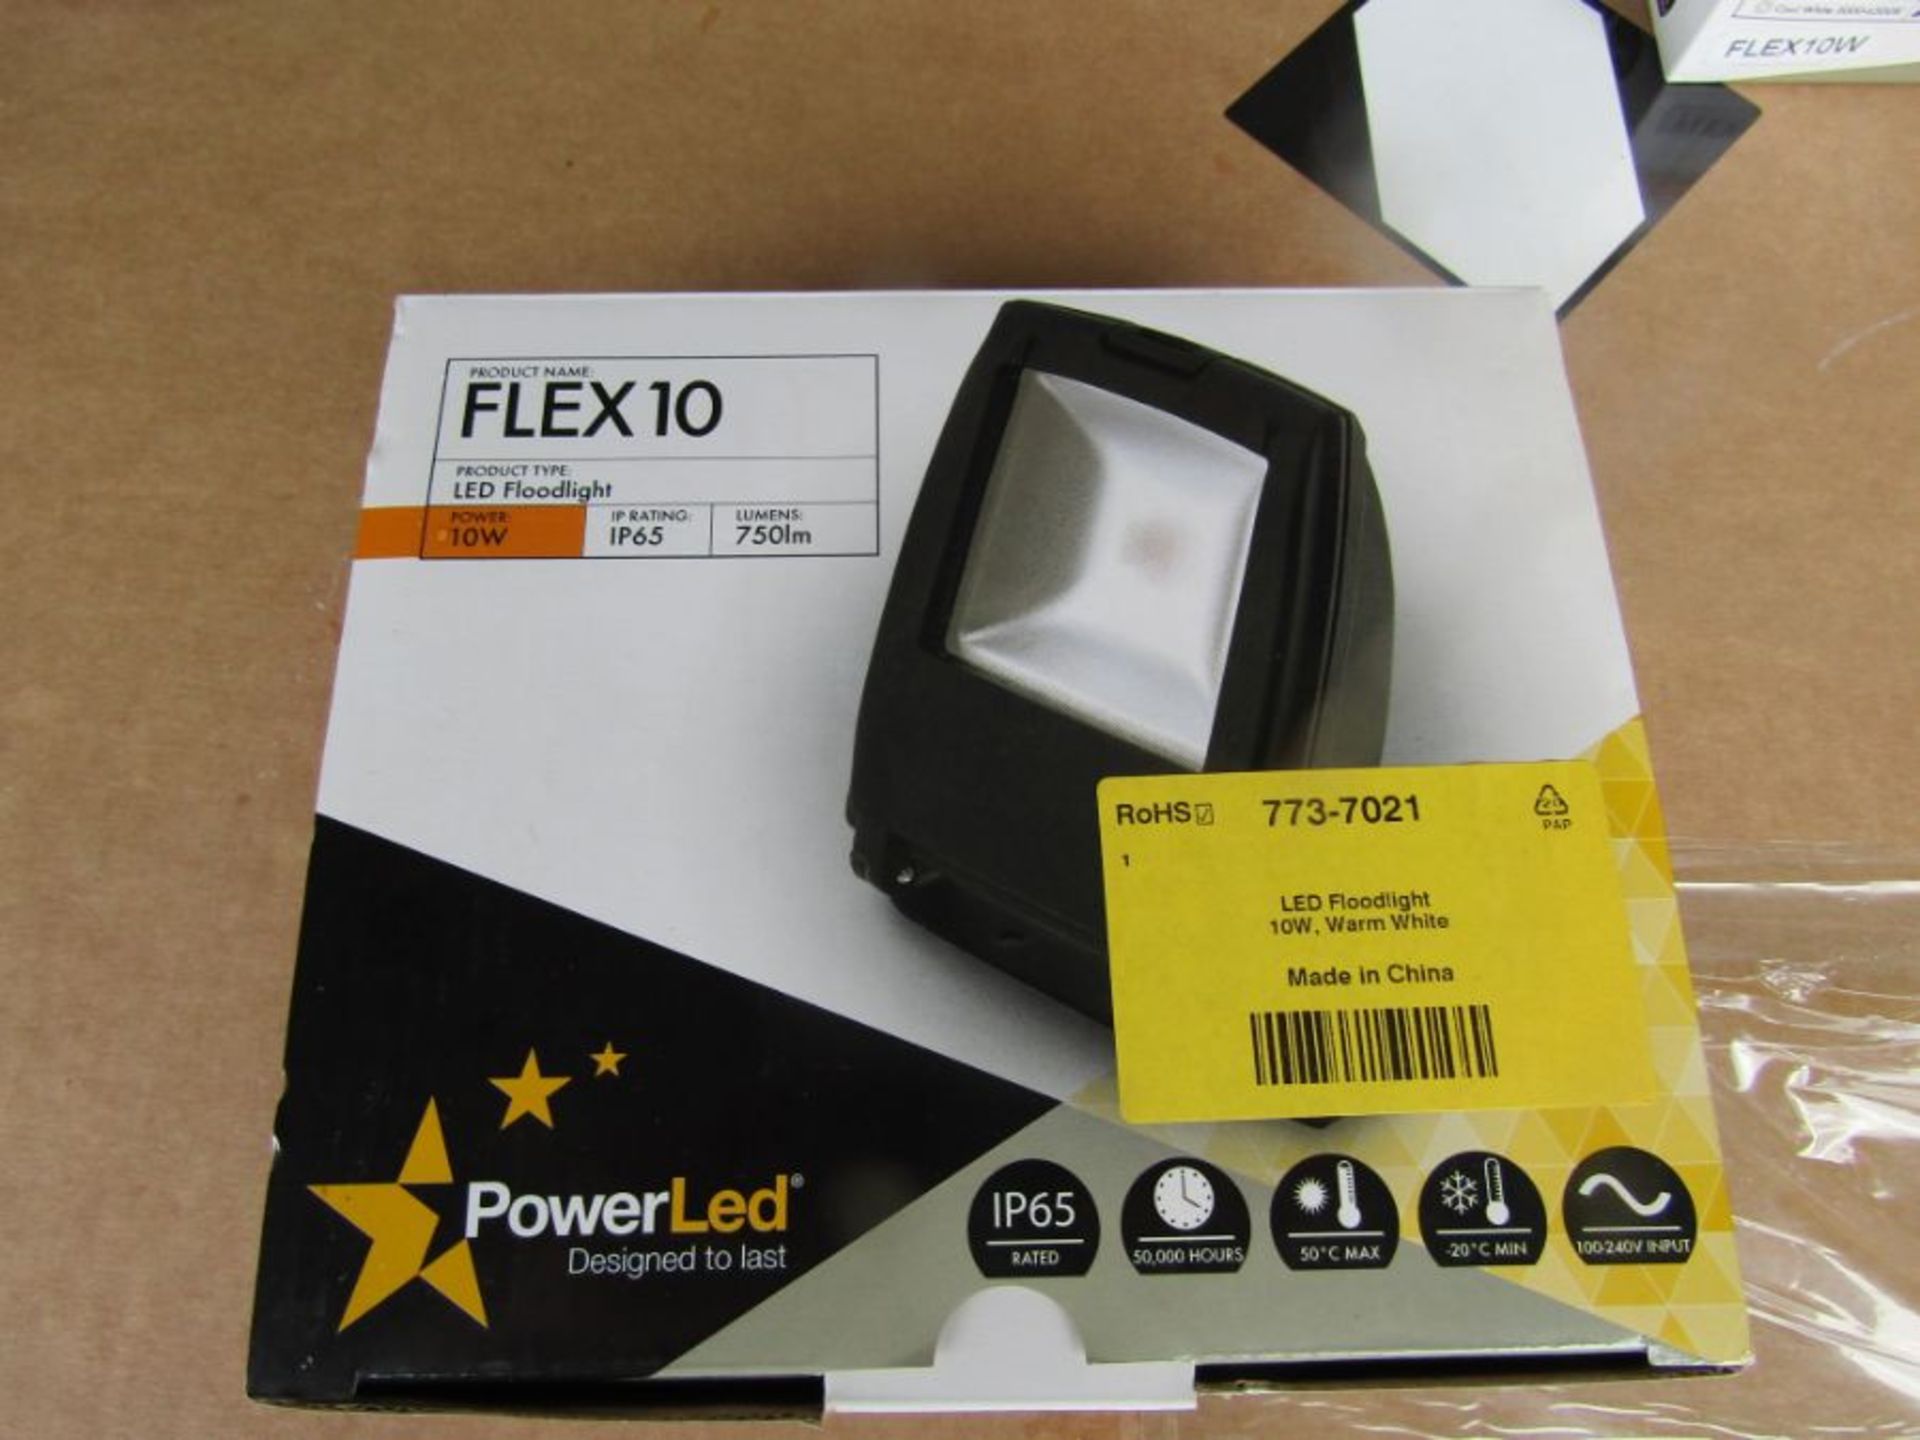 4 x PowerLED Flex10 LED Floodlight 1 LED 10 W IP65 85 - 265 V - Head 7737021 - Image 3 of 4